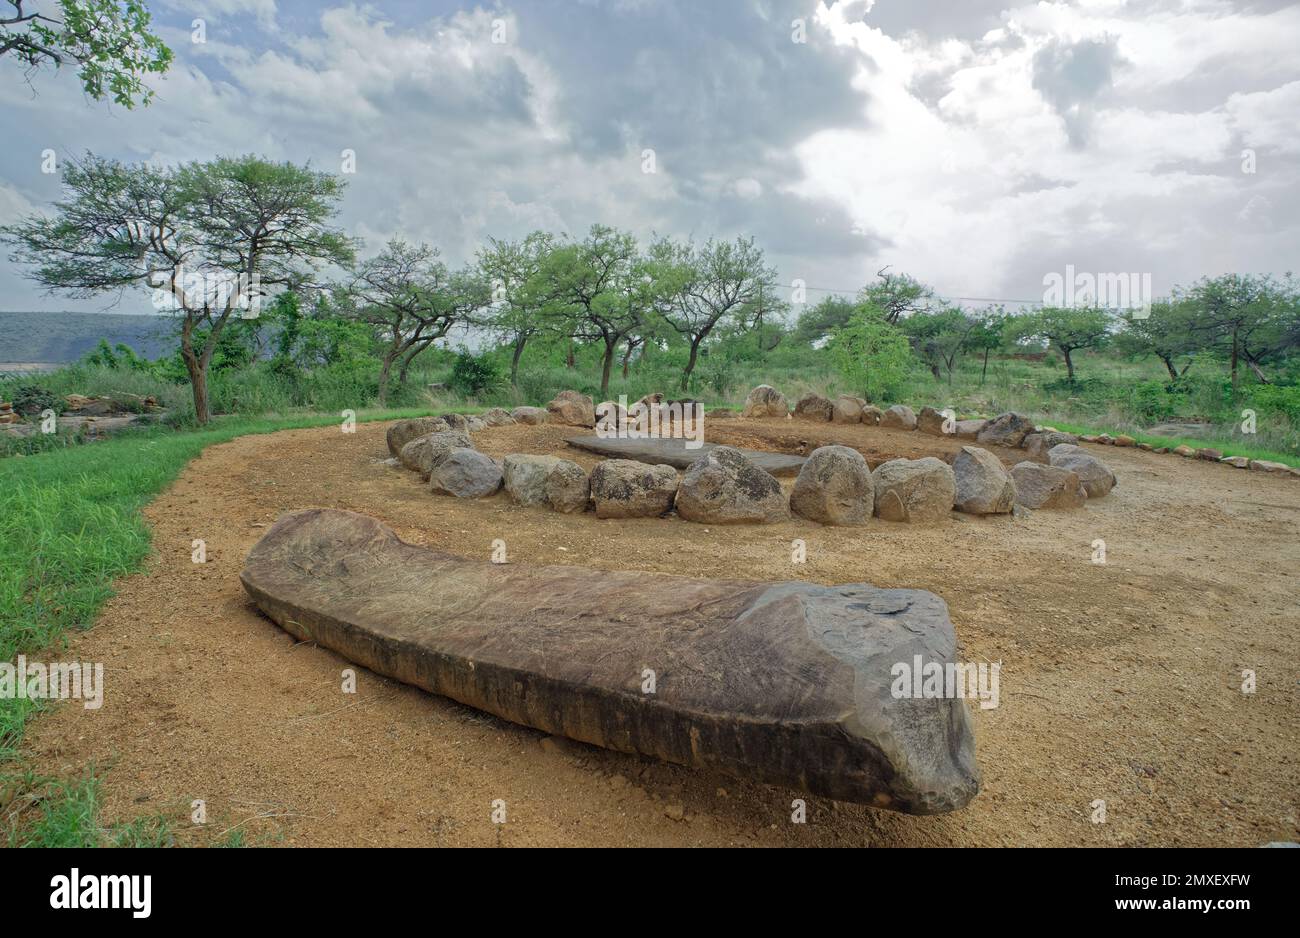 08 23 2015 luogo di sepoltura megalitica Cist sepoltura che rappresenta i metodi di disposizione dei morti a Nagarjuna Konda, Andhra Pradesh, India, Asia, indiano, Foto Stock